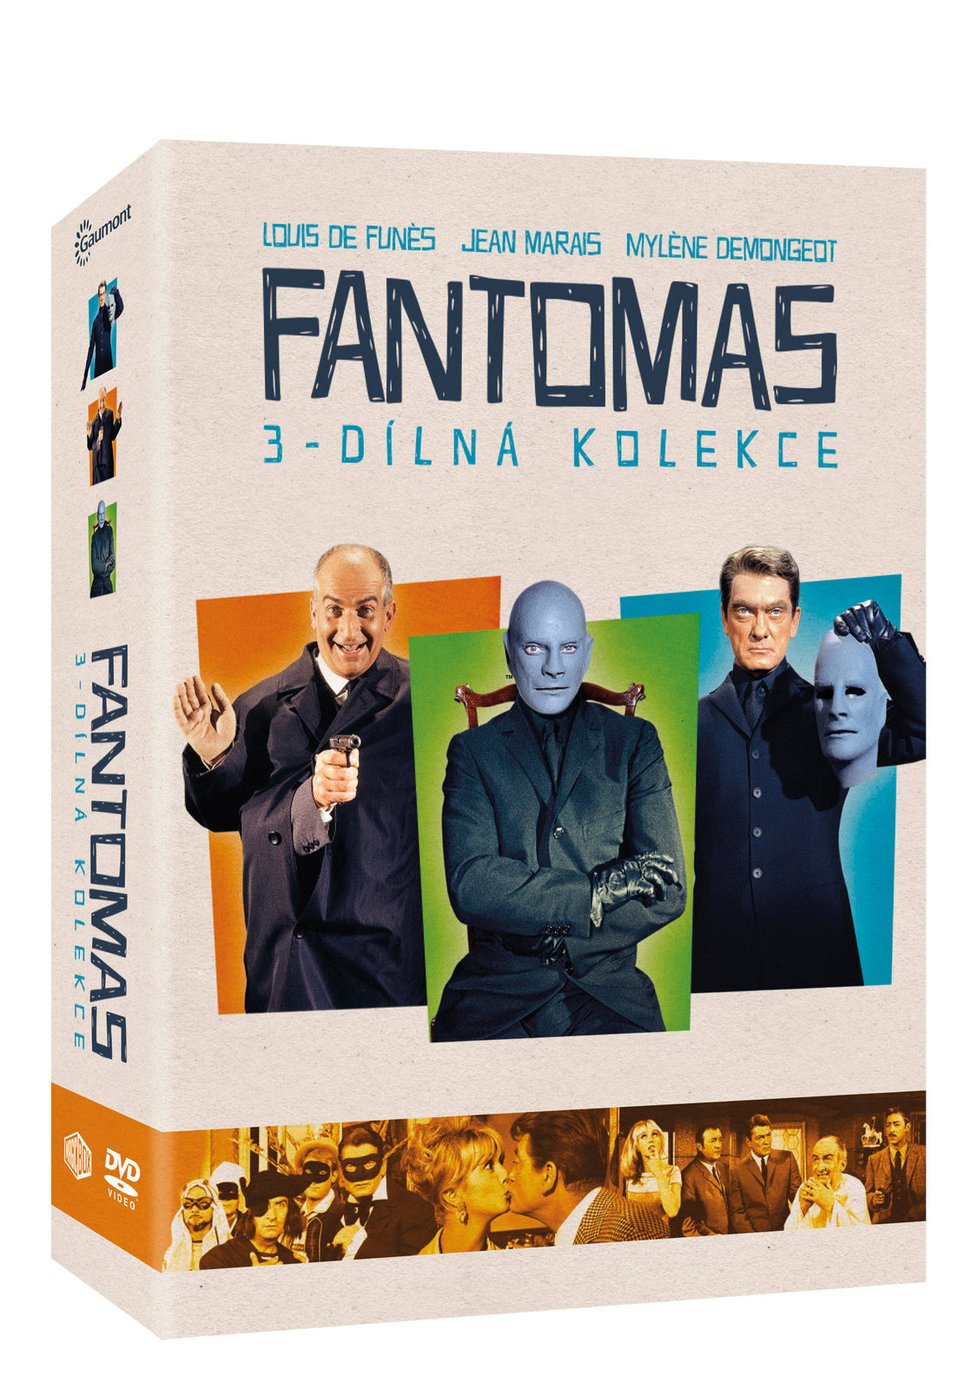 Kolekce filmů s Fantomasem Cena: 399 Kč Kde: Bontonland, hypermarkety